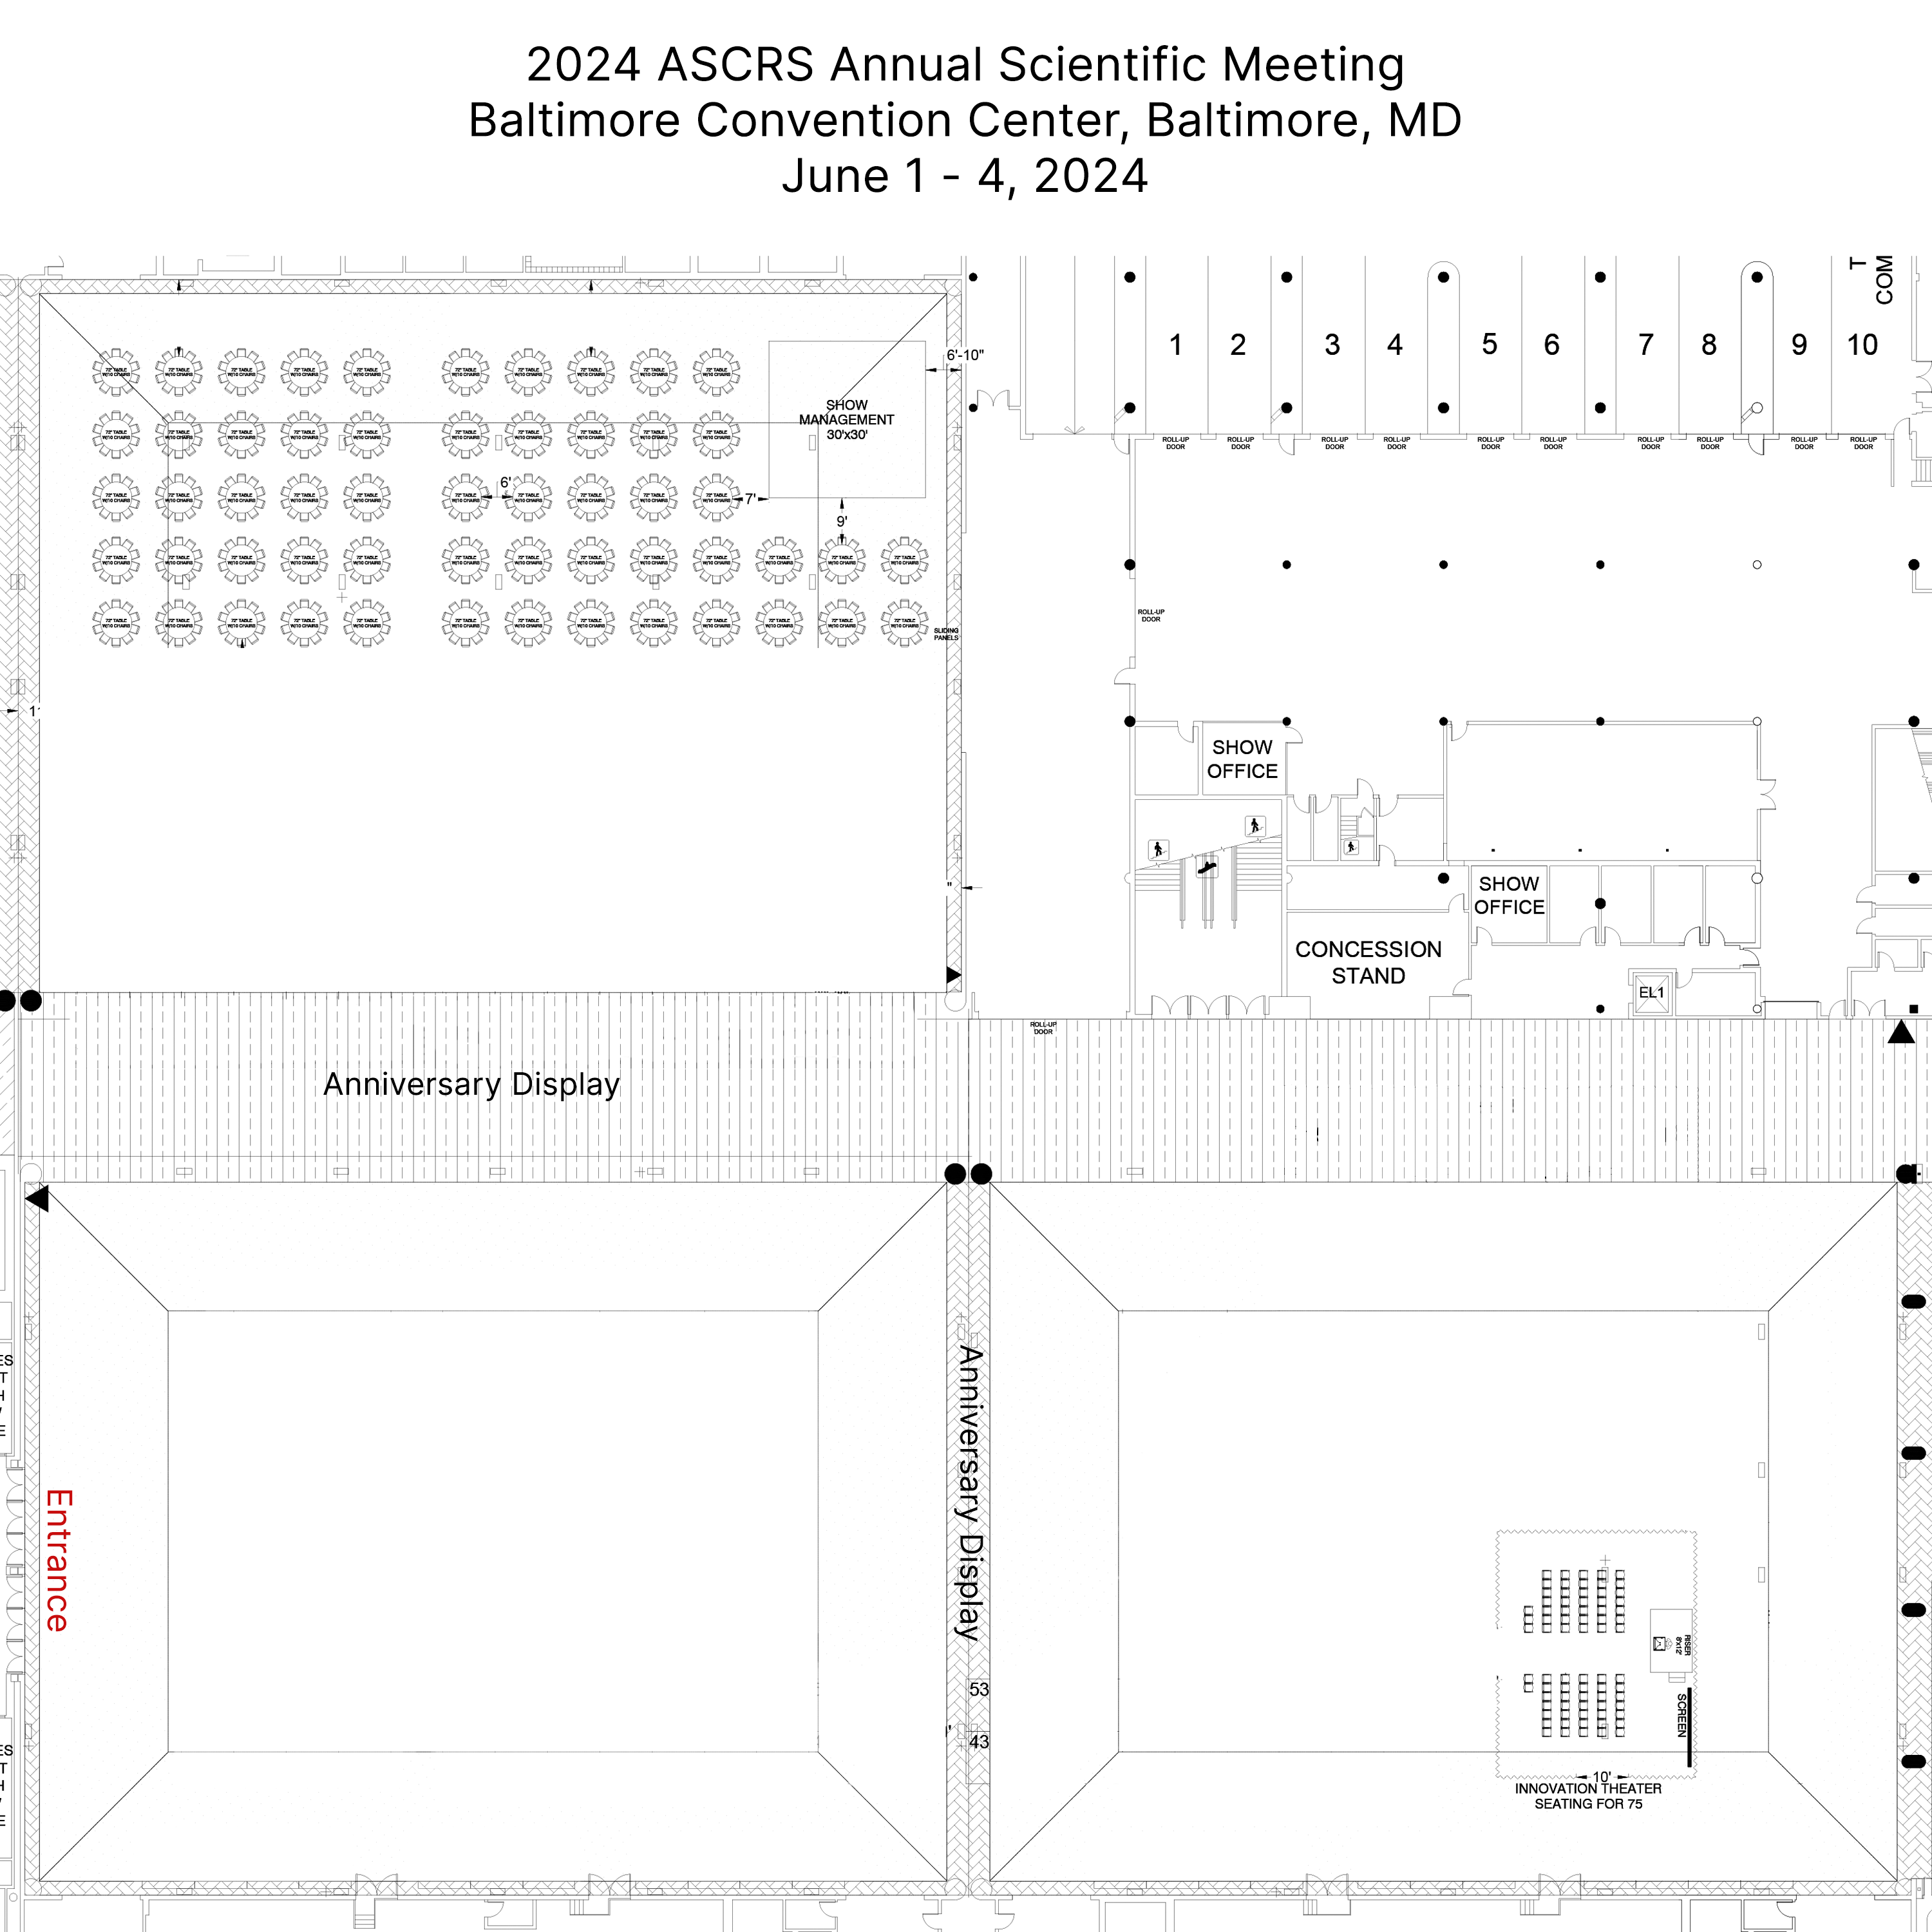 2024 ASCRS Annual Scientific Meeting Exhibitor Floor Plan